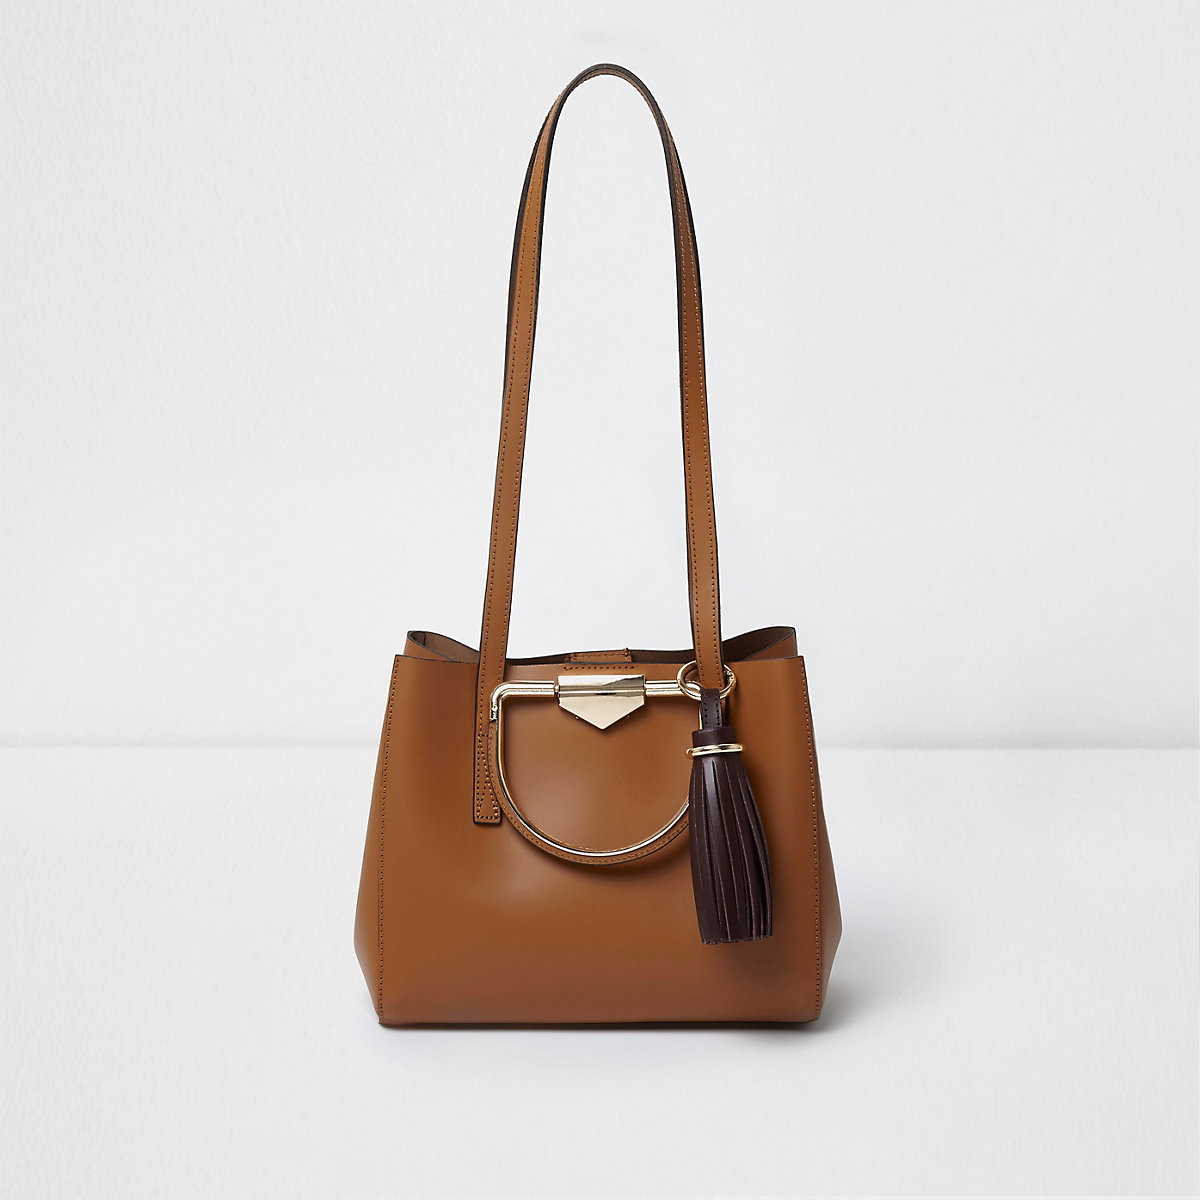 Tan leather metal handle tassel mini tote bag - Shopper & Tote Bags ...